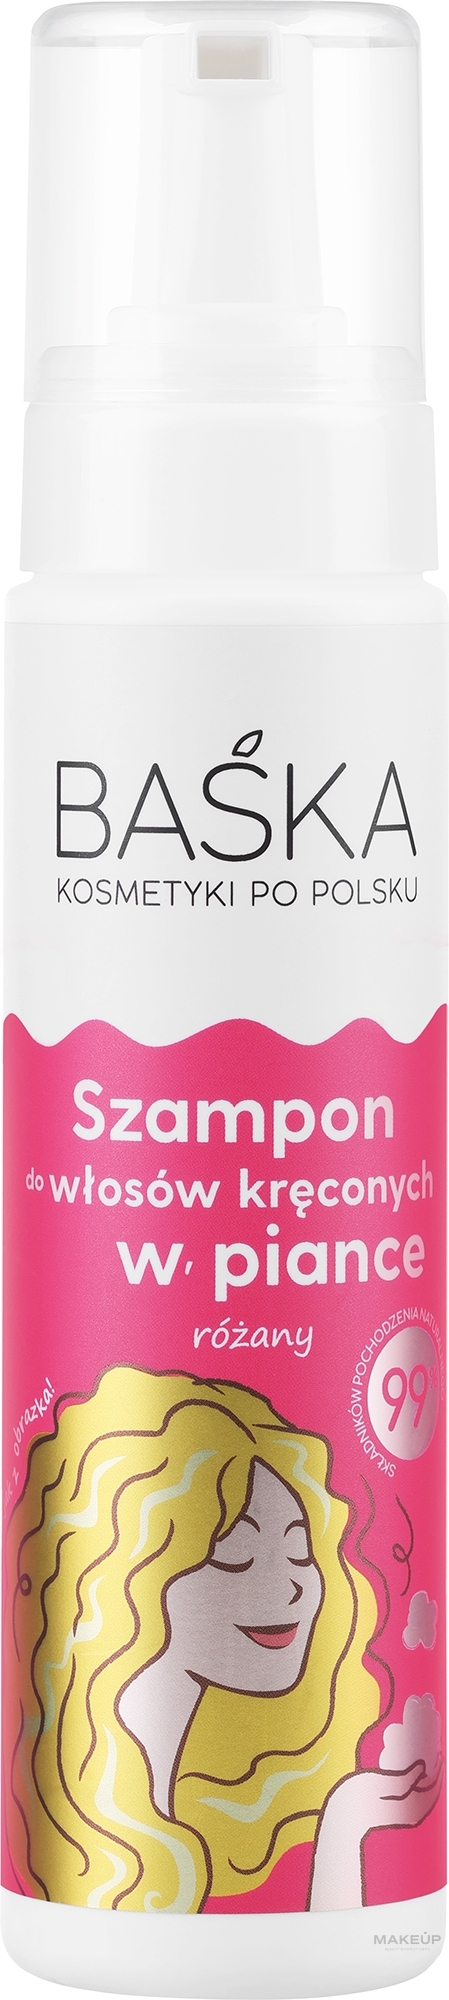 Różany szampon do włosów kręconych w piance - Baska  — Zdjęcie 200 ml